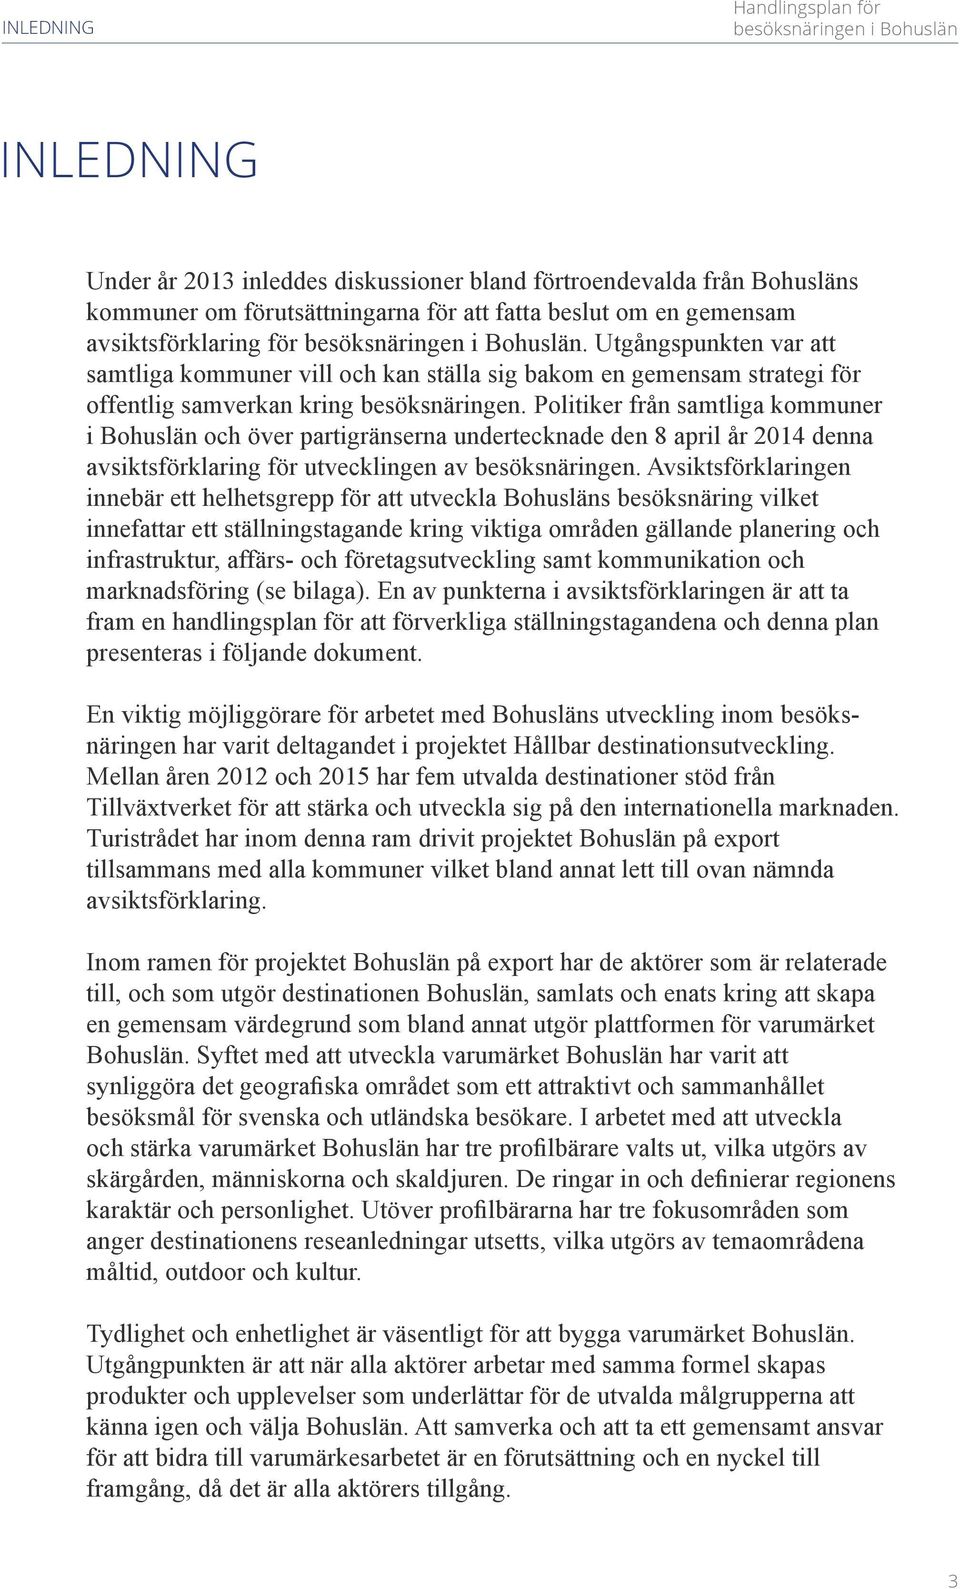 Politiker från samtliga kommuner i Bohuslän och över partigränserna undertecknade den 8 april år 2014 denna avsiktsförklaring för utvecklingen av besöksnäringen.